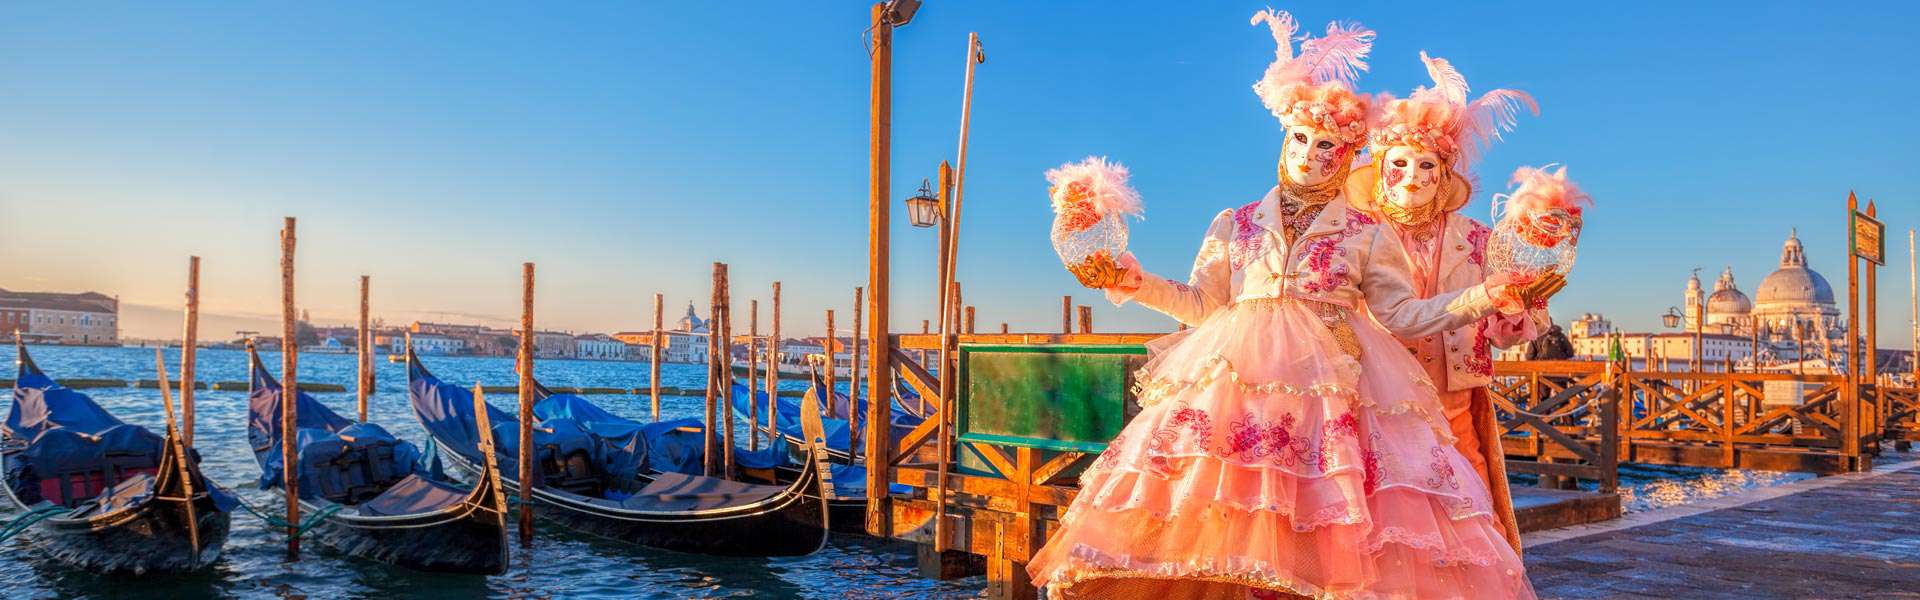 Magische Momente, barocke Kostüme: Karneval in Venedig